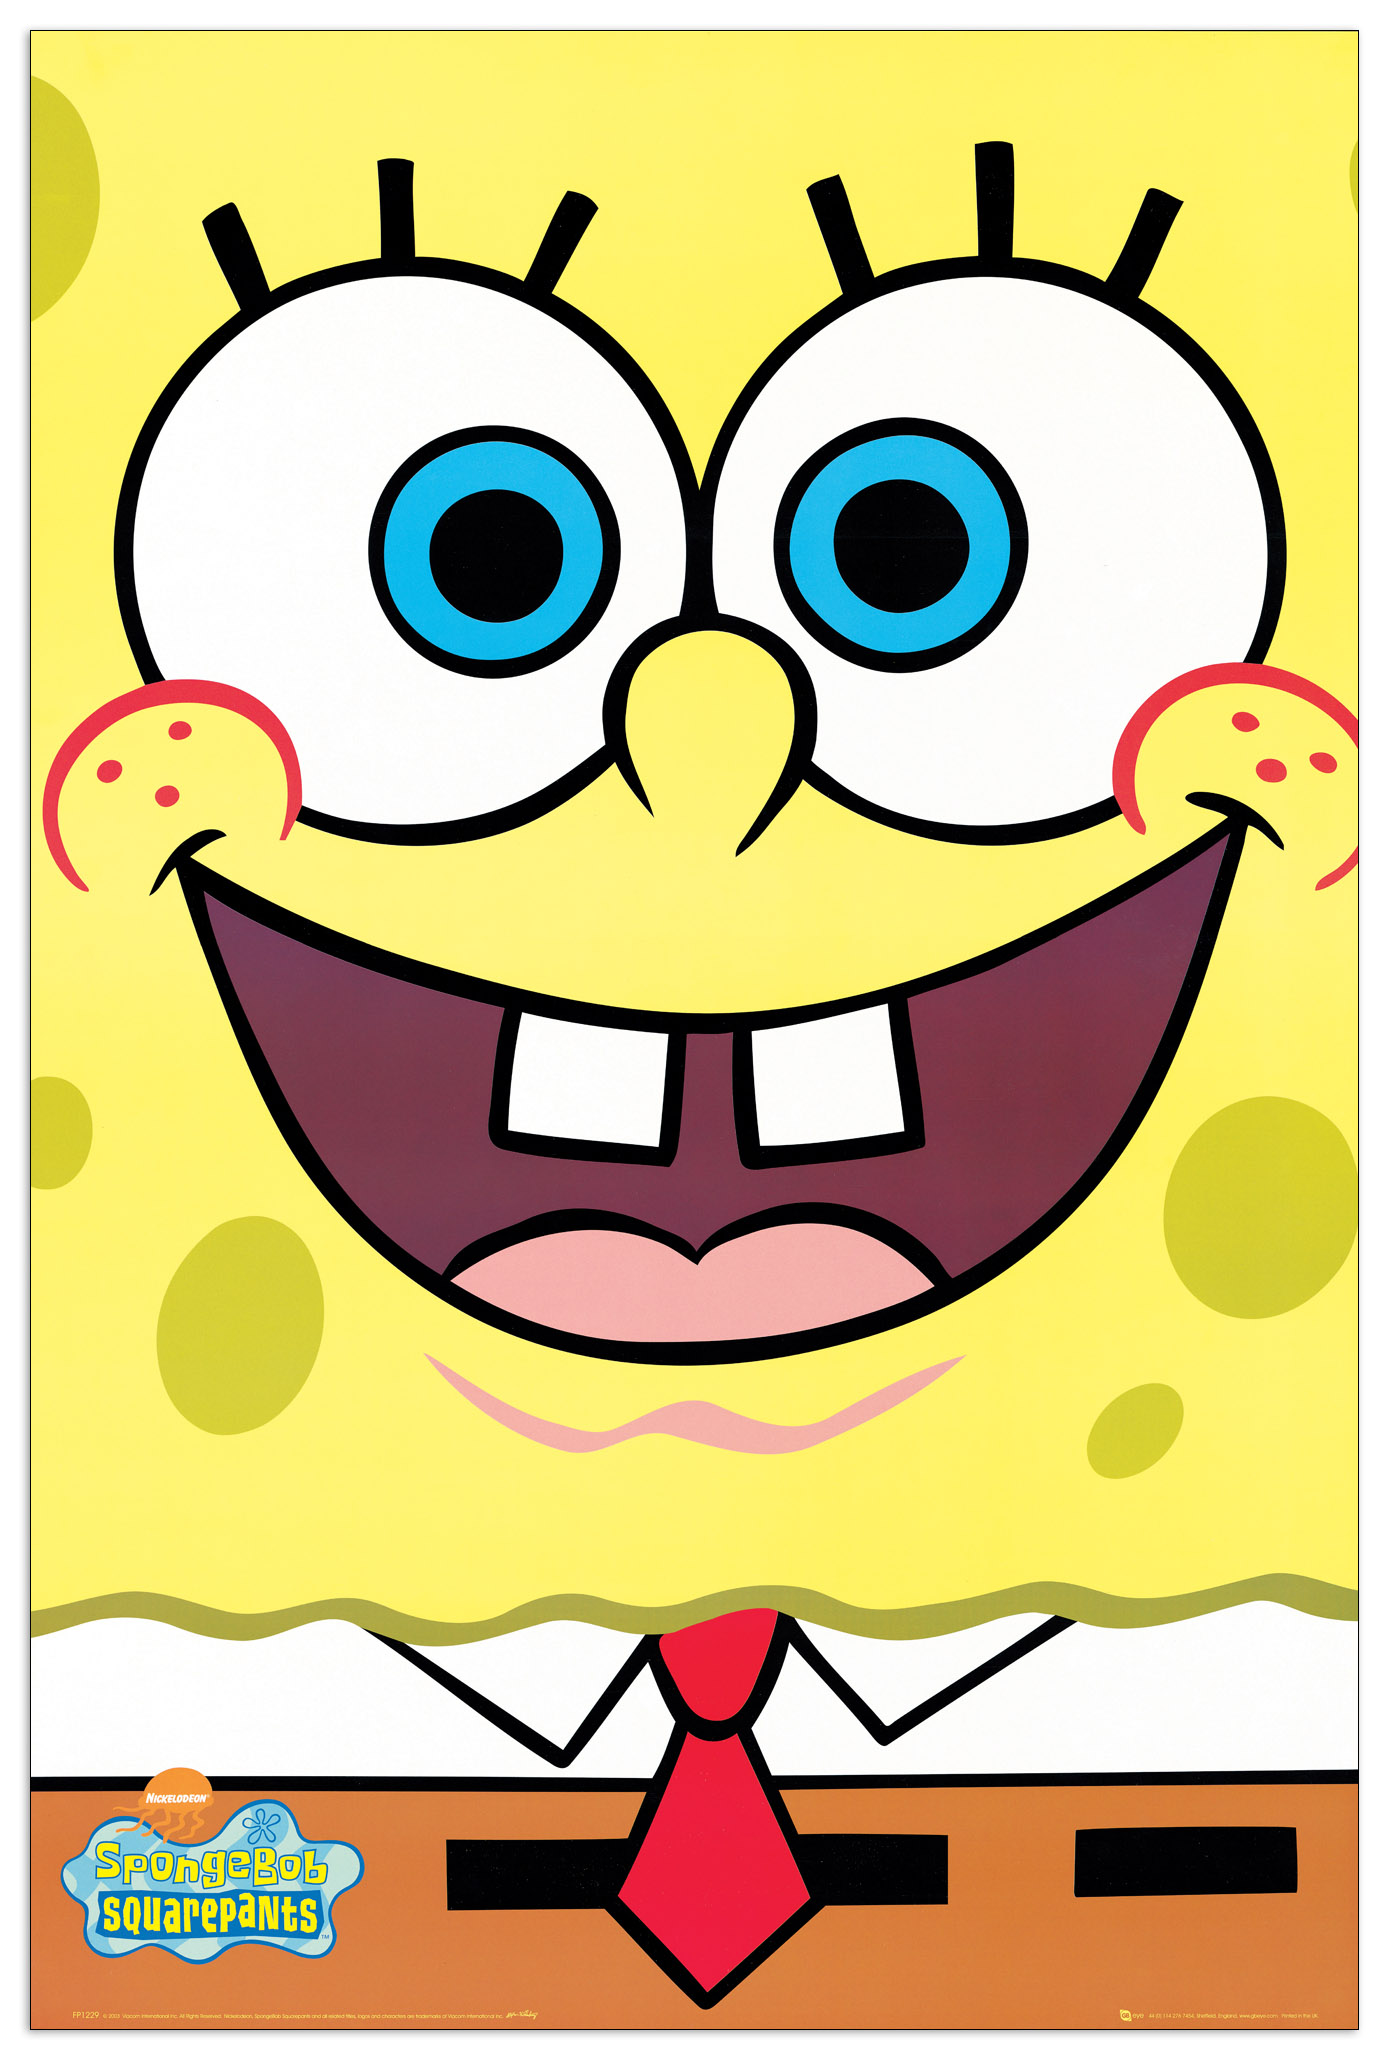 Pannello MDF - Spongebob - Wallart - Stampa  - Riproduzione Artistica 60X 90 CM